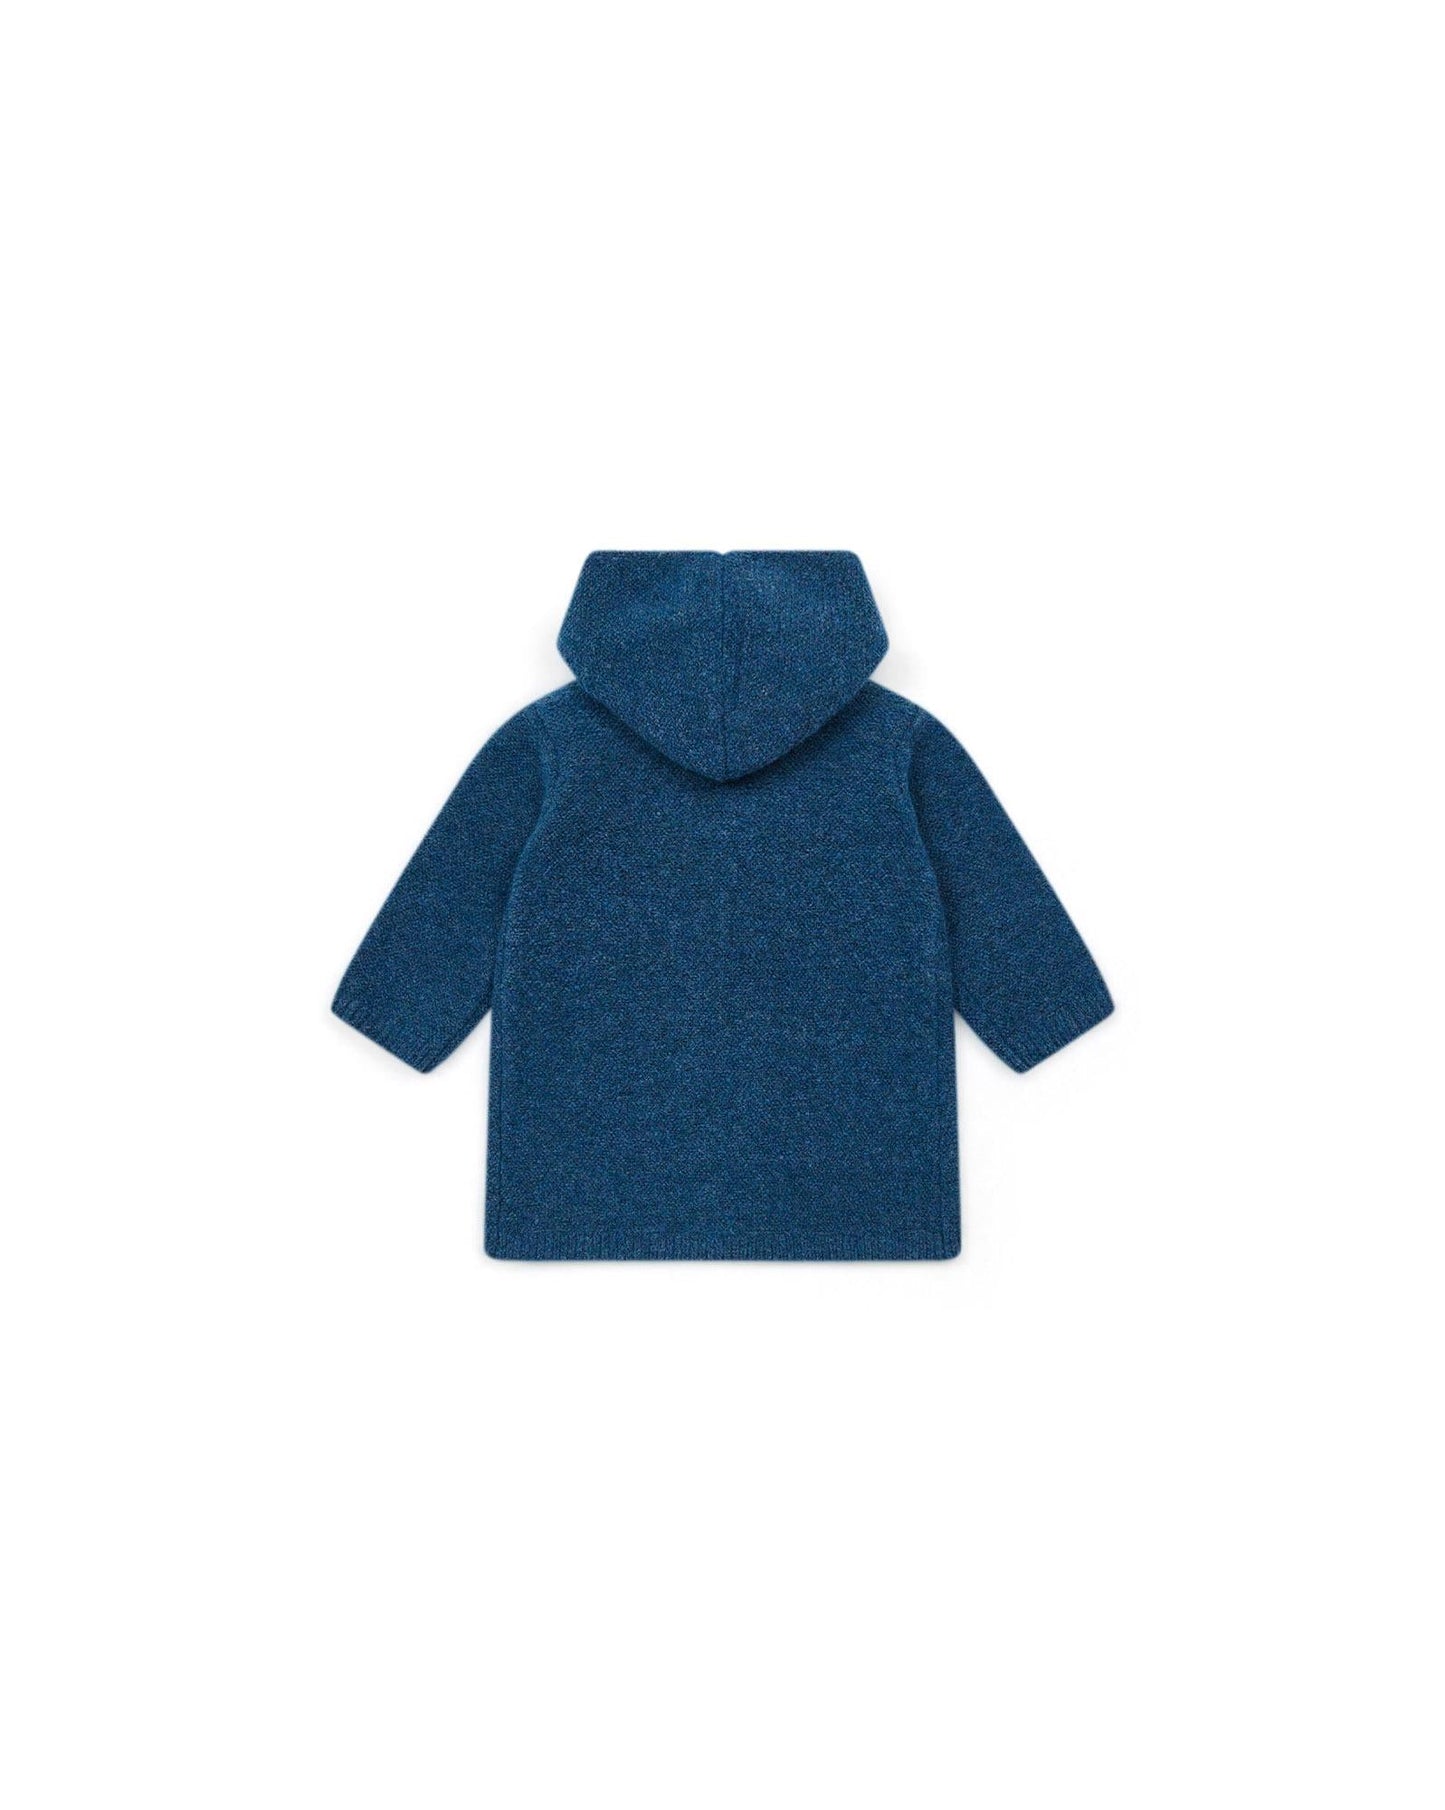 Coat Miro Blue Baby In knitting foam point